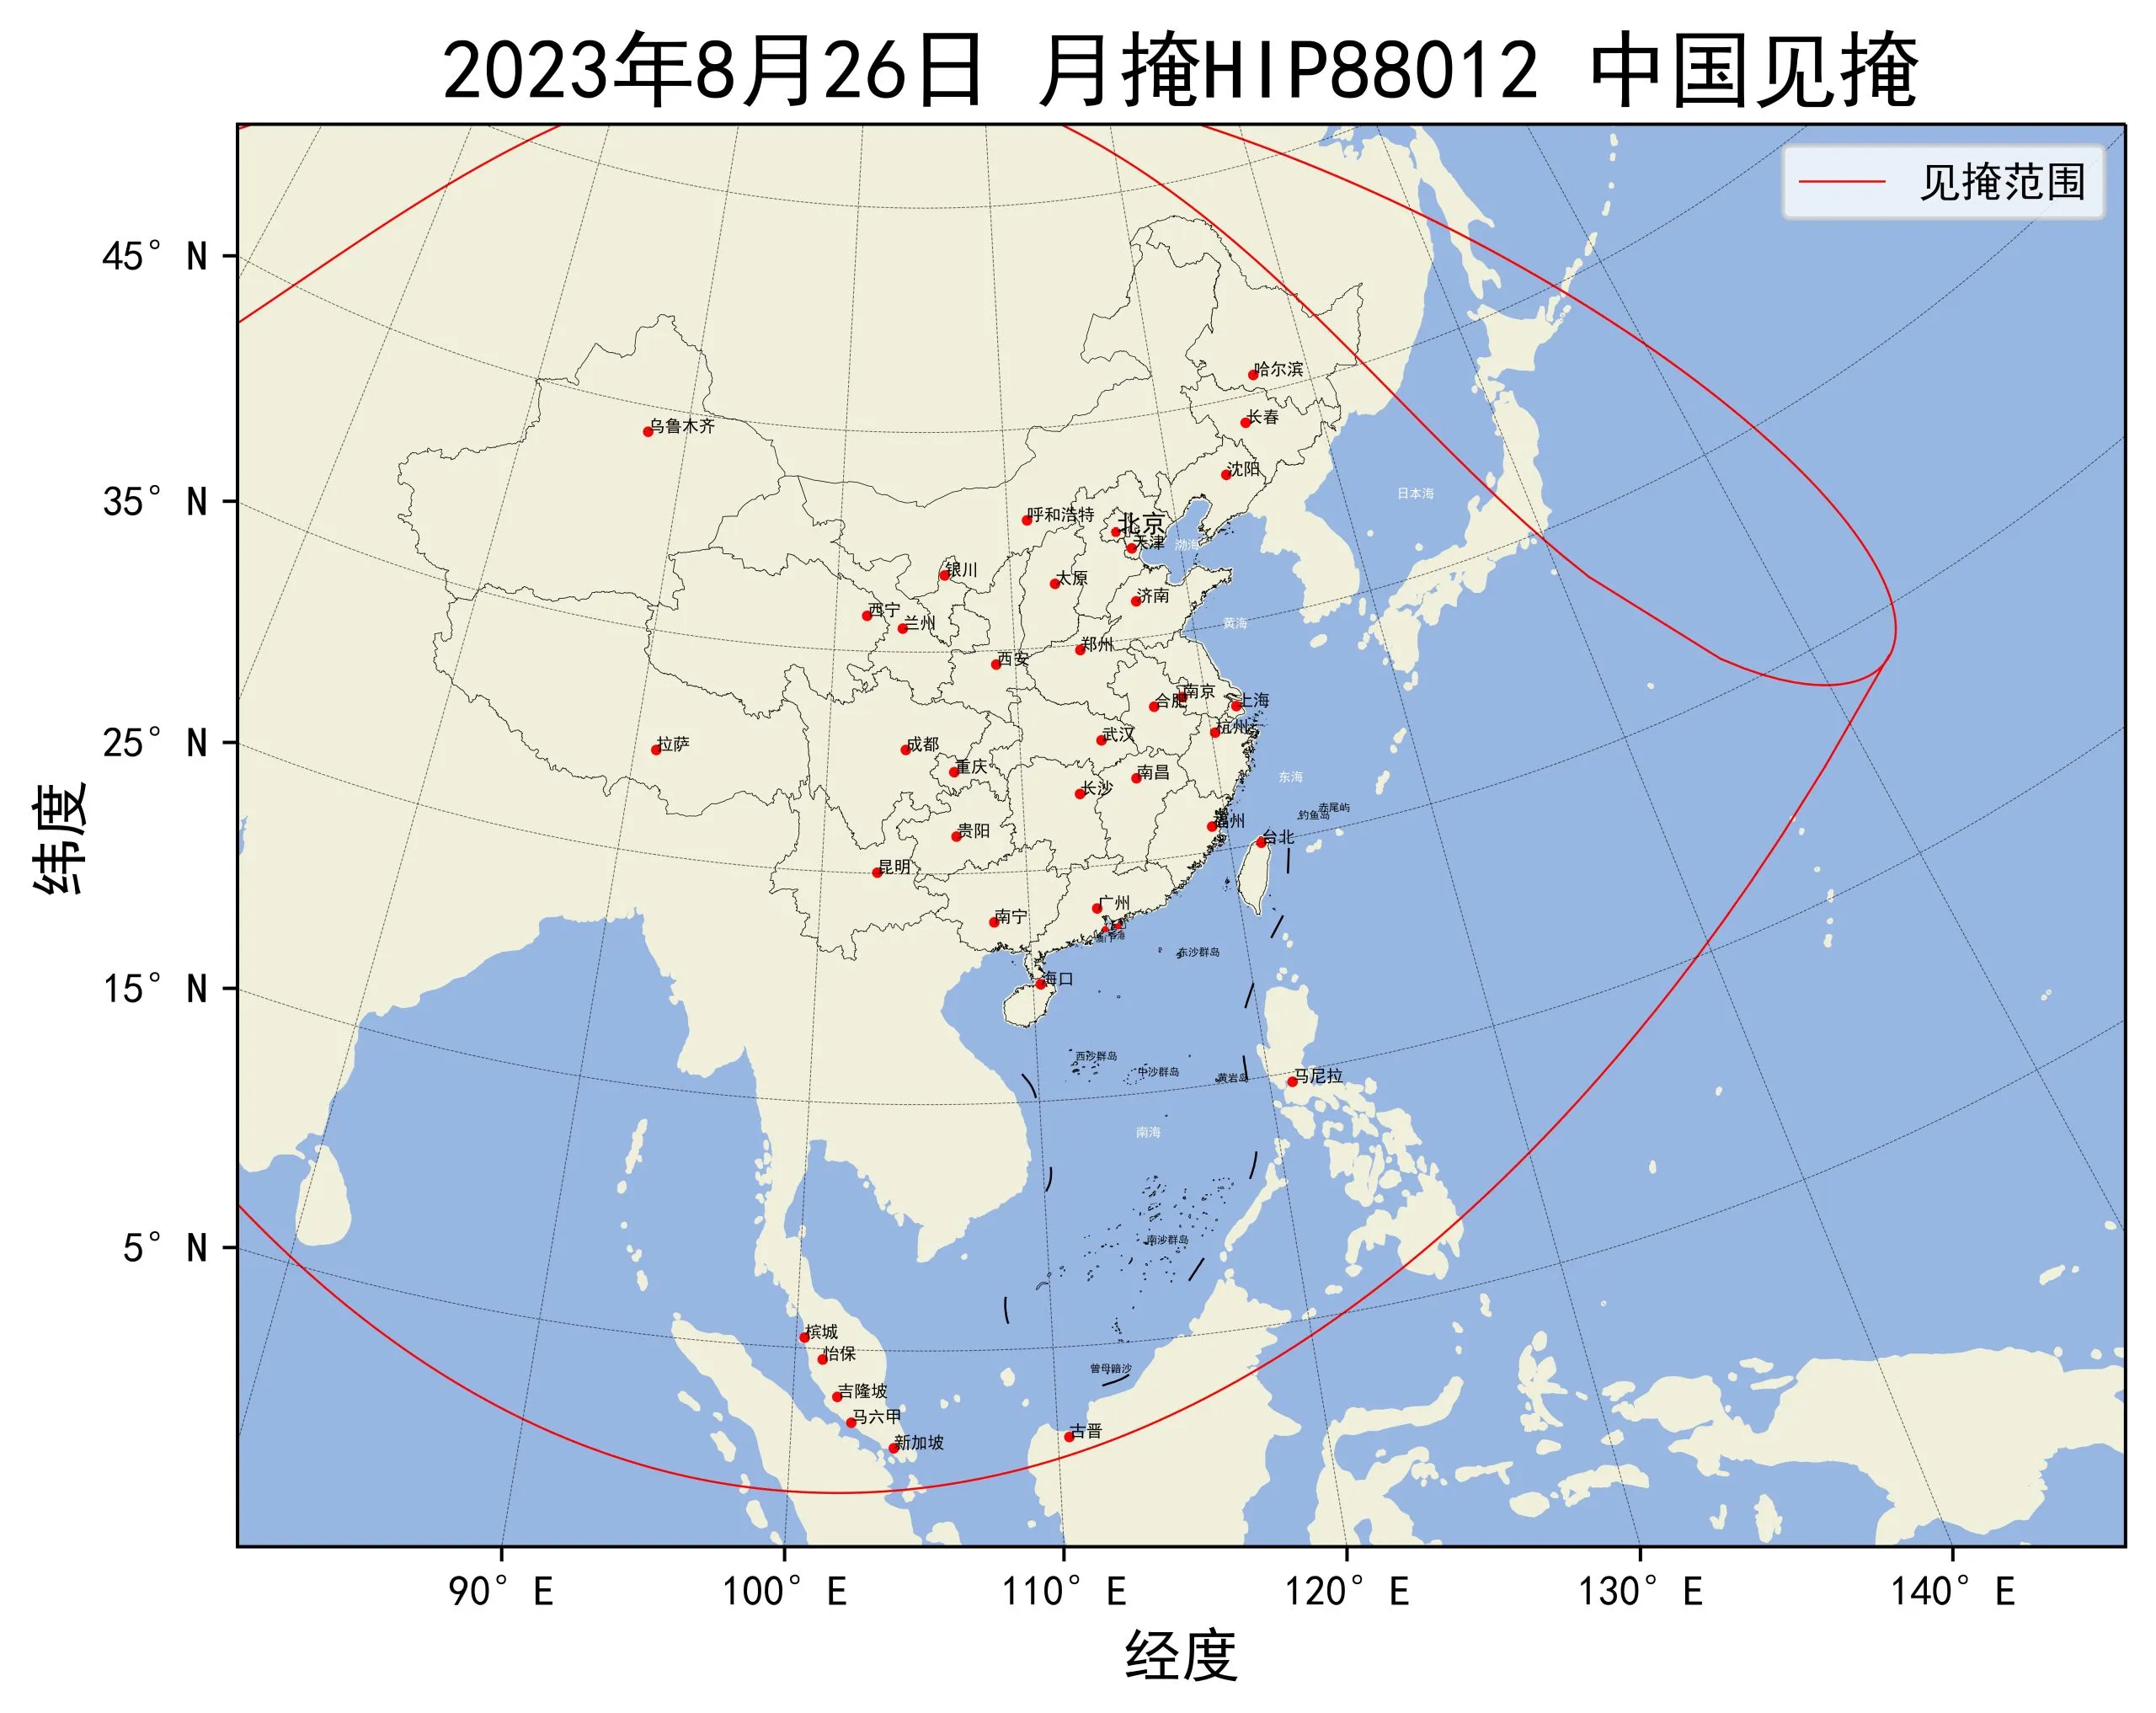 2023年8月26日月掩HIP88012中国见掩